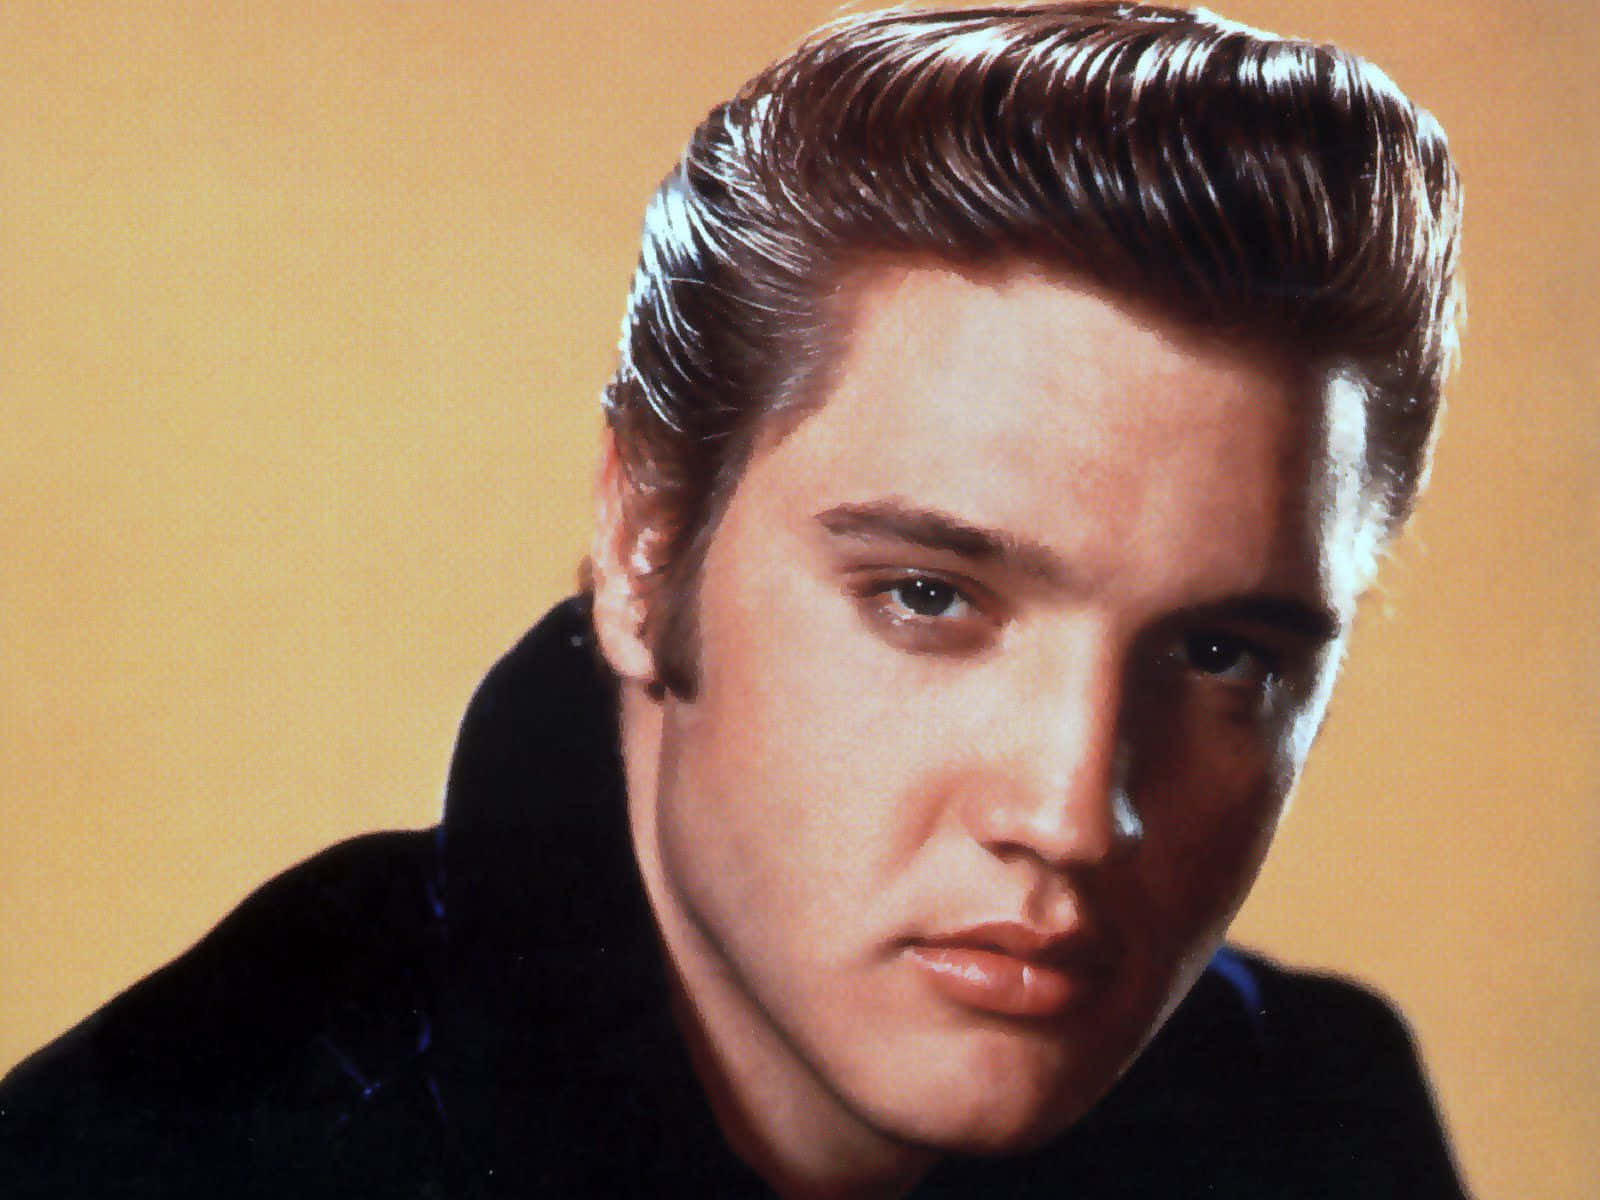 Ikoniskrock'n'roll-stjerne, Elvis Presley.